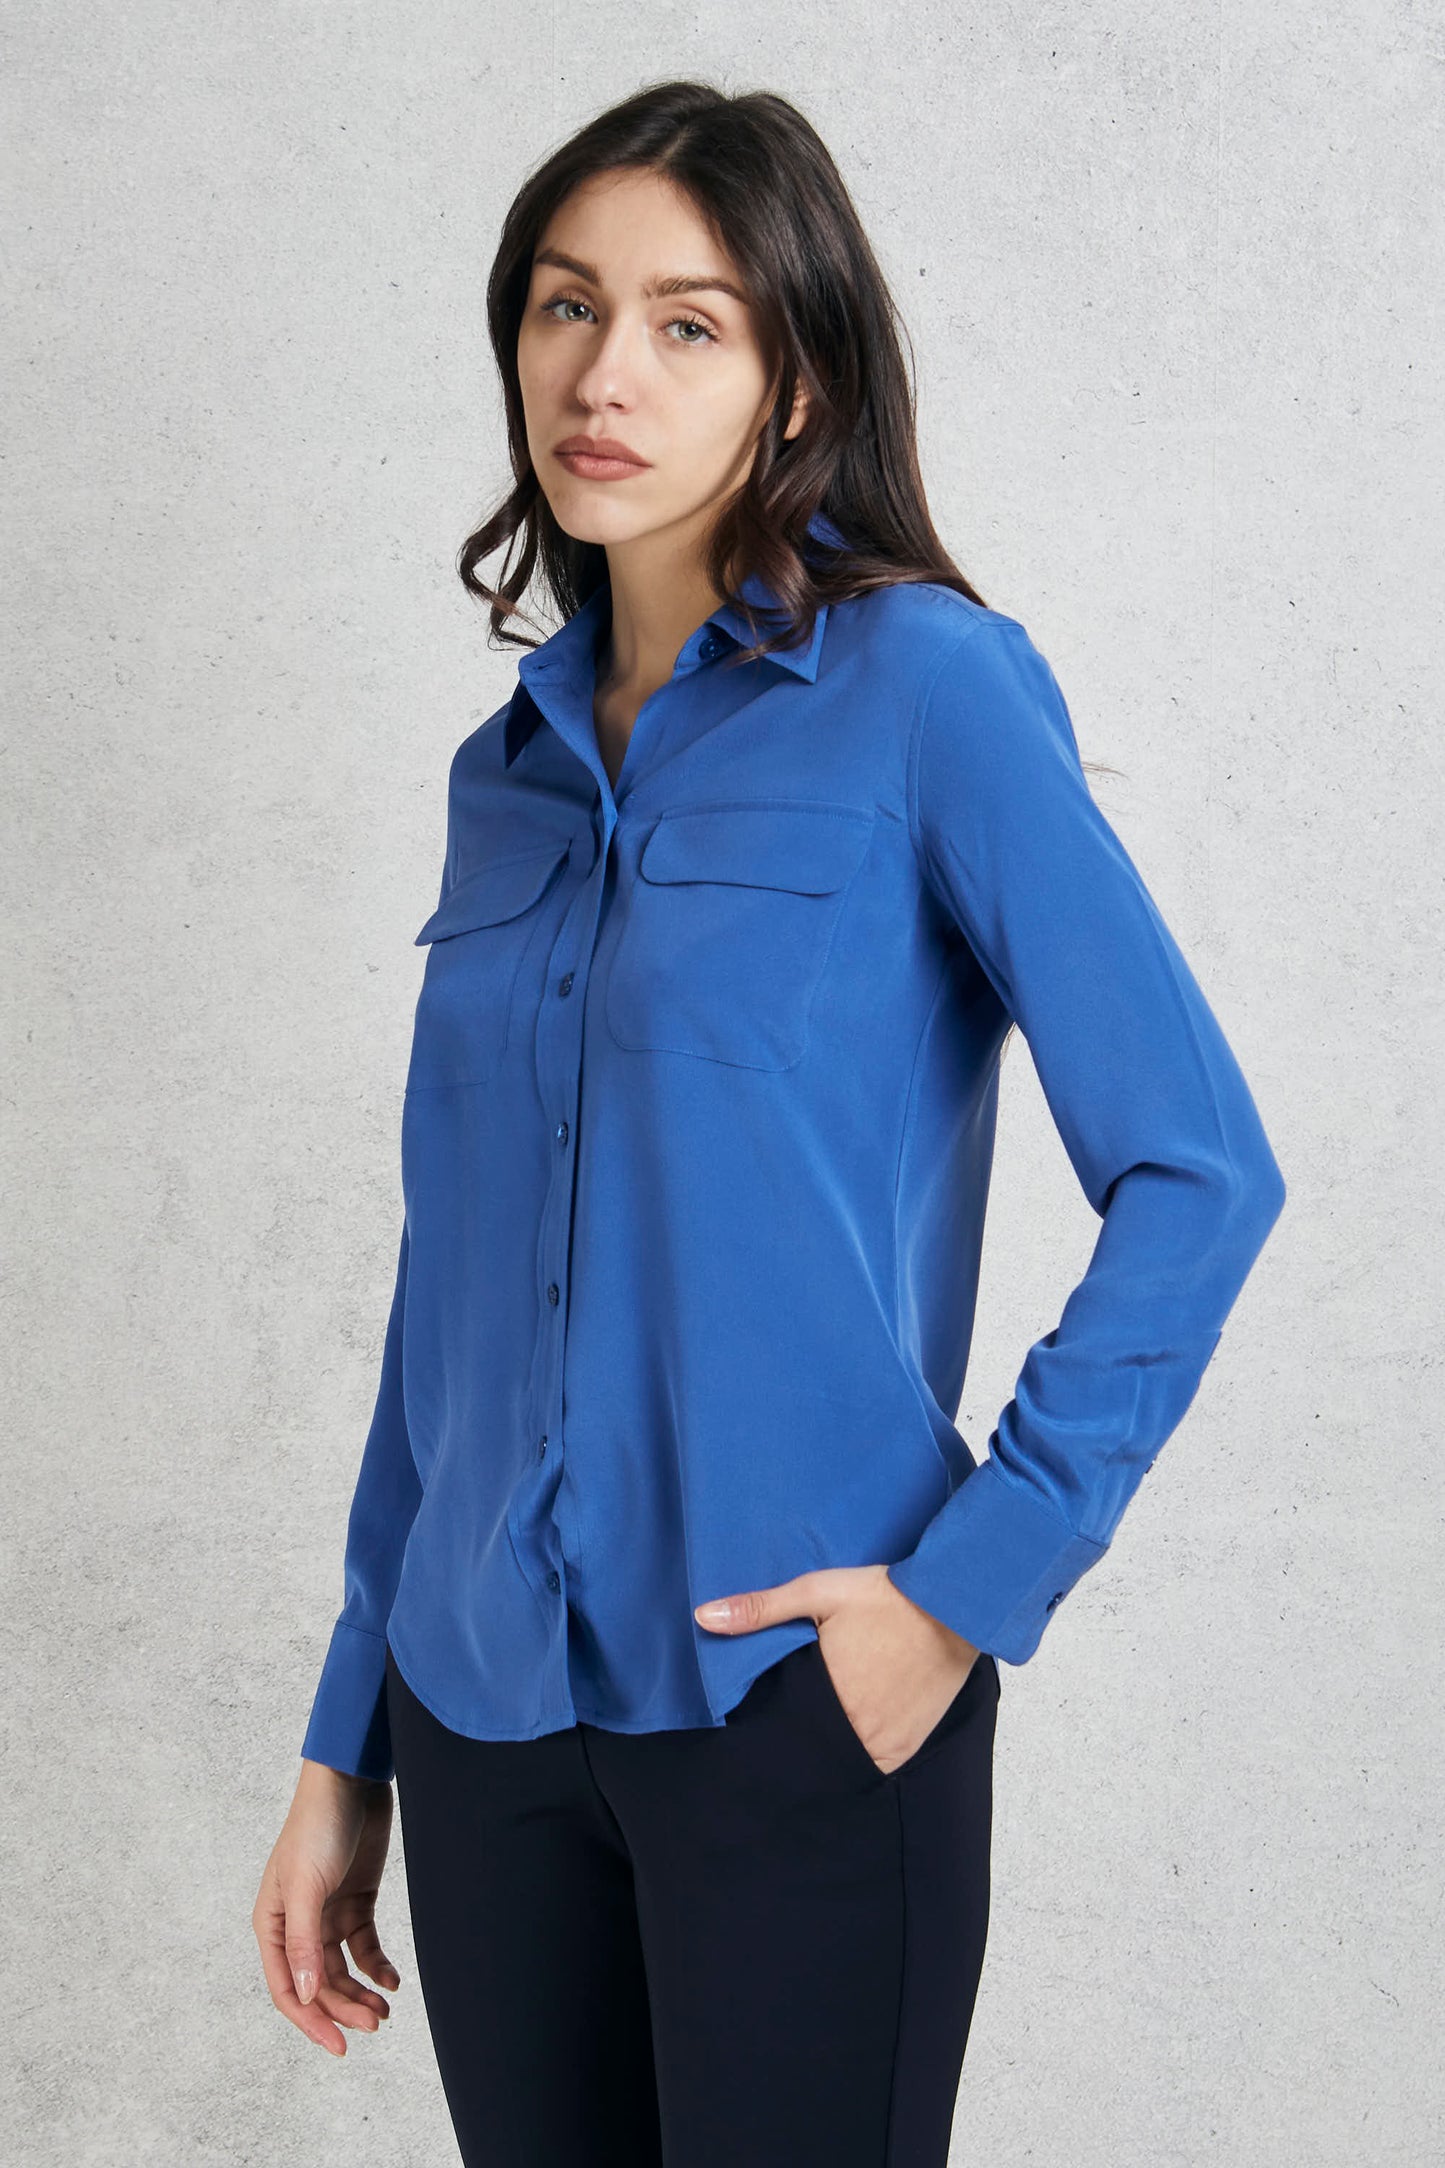  Equipment Femme Blue Silk Shirt For Women Blu Donna - 4